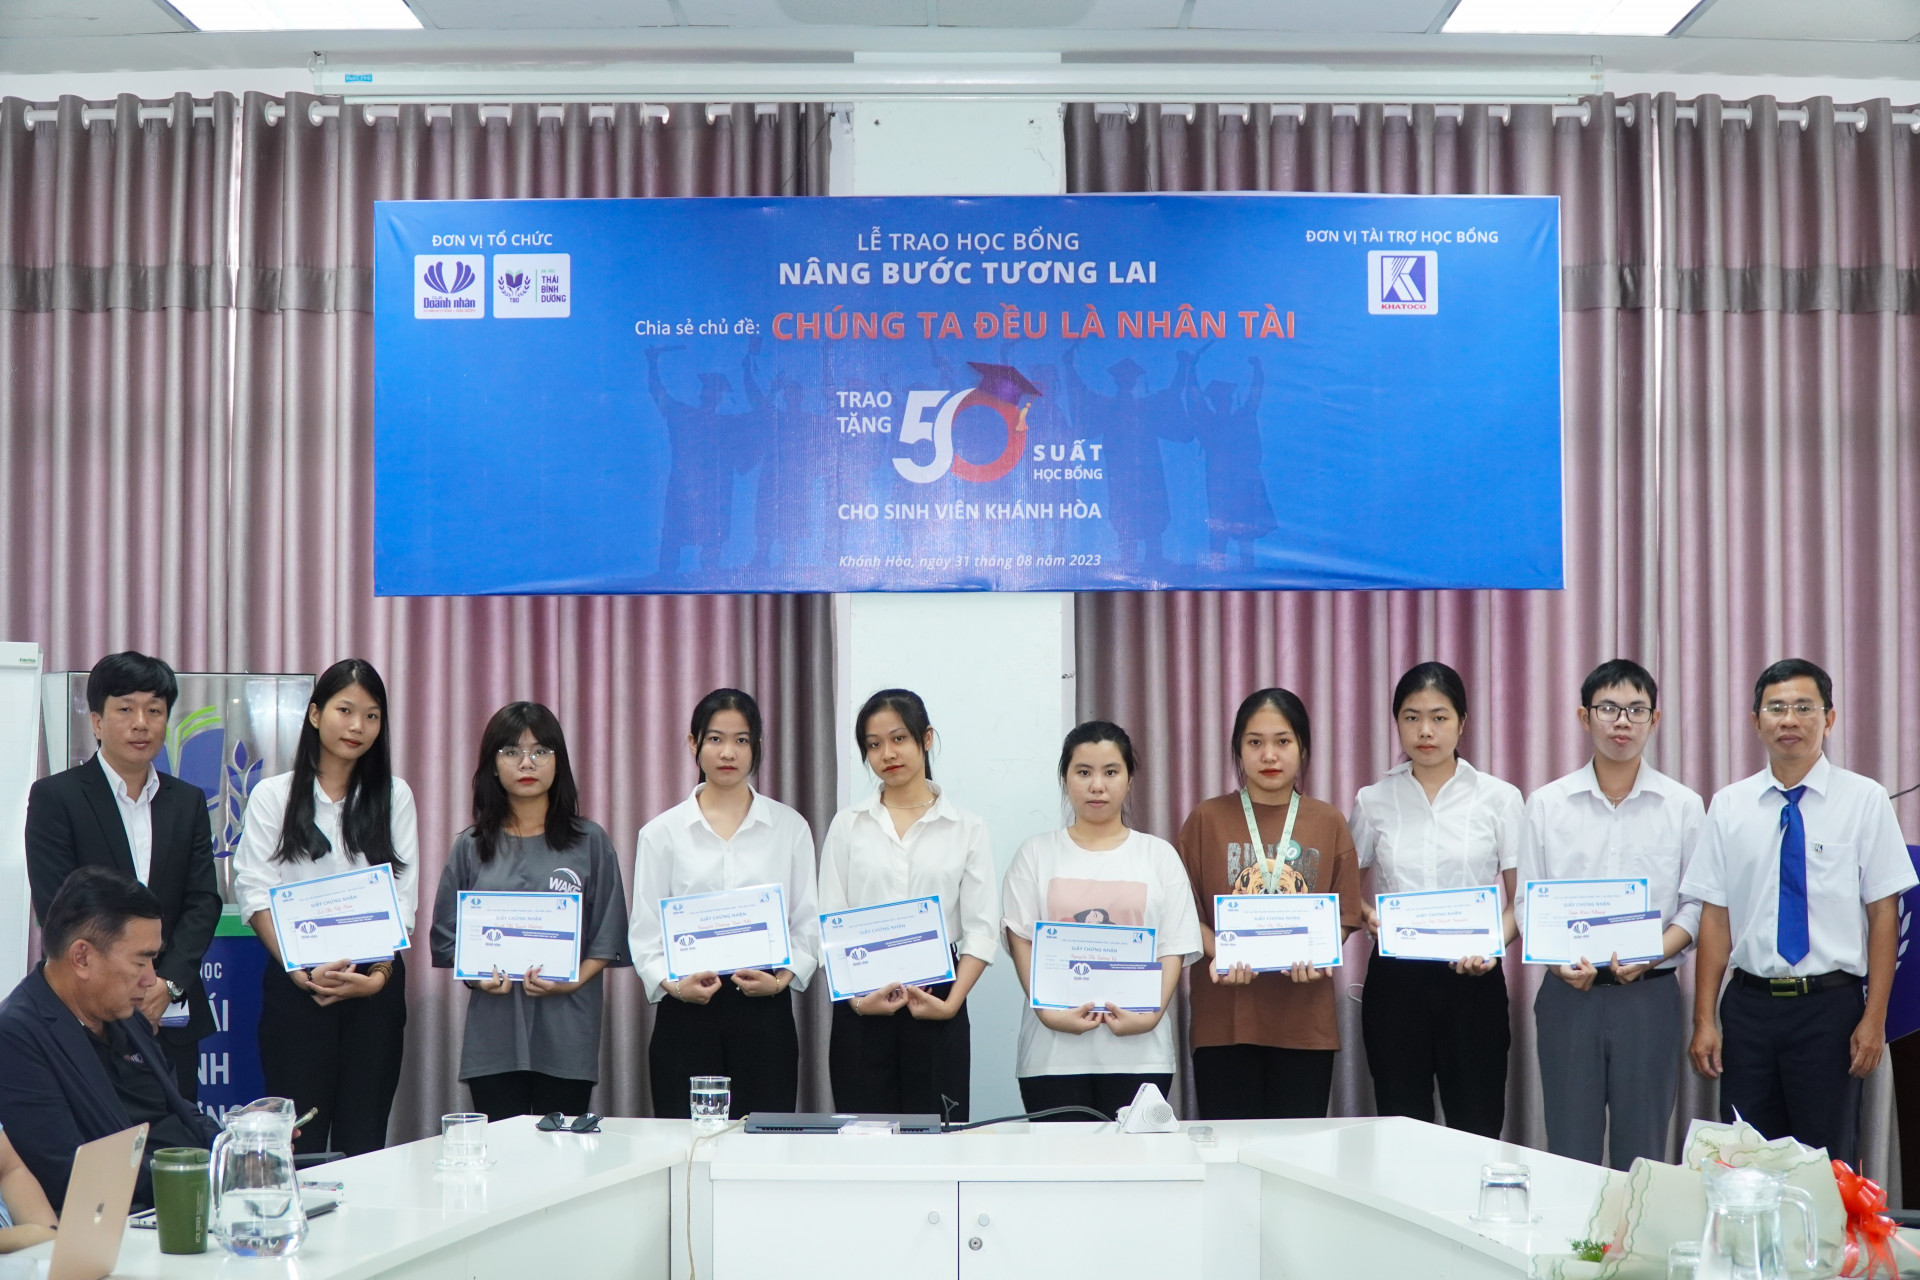 Ông Nguyễn Duy Vũ - Chủ tịch Công đoàn Tổng công ty Khánh Việt (ngoài cùng bên phải) trao học bổng Nâng bước tương lai cho các em sinh viên Khánh Hòa